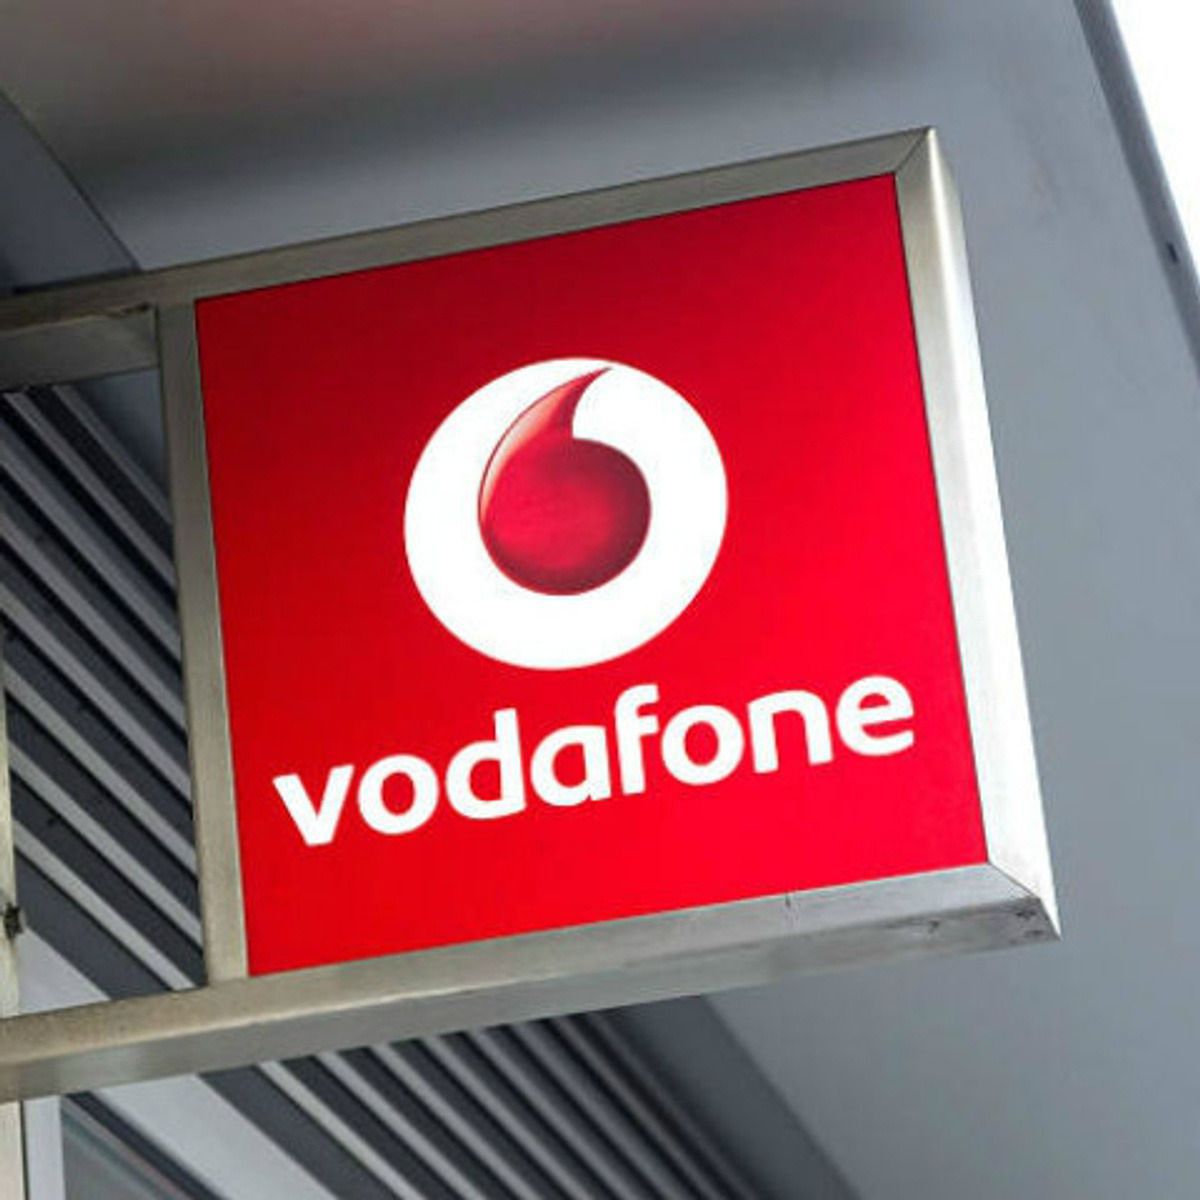 Vodafone Ukraine викупить азербайджанська компанія. Другого за величиною оператора в Україні готується придбати азербайджанська компанія Bakcell.